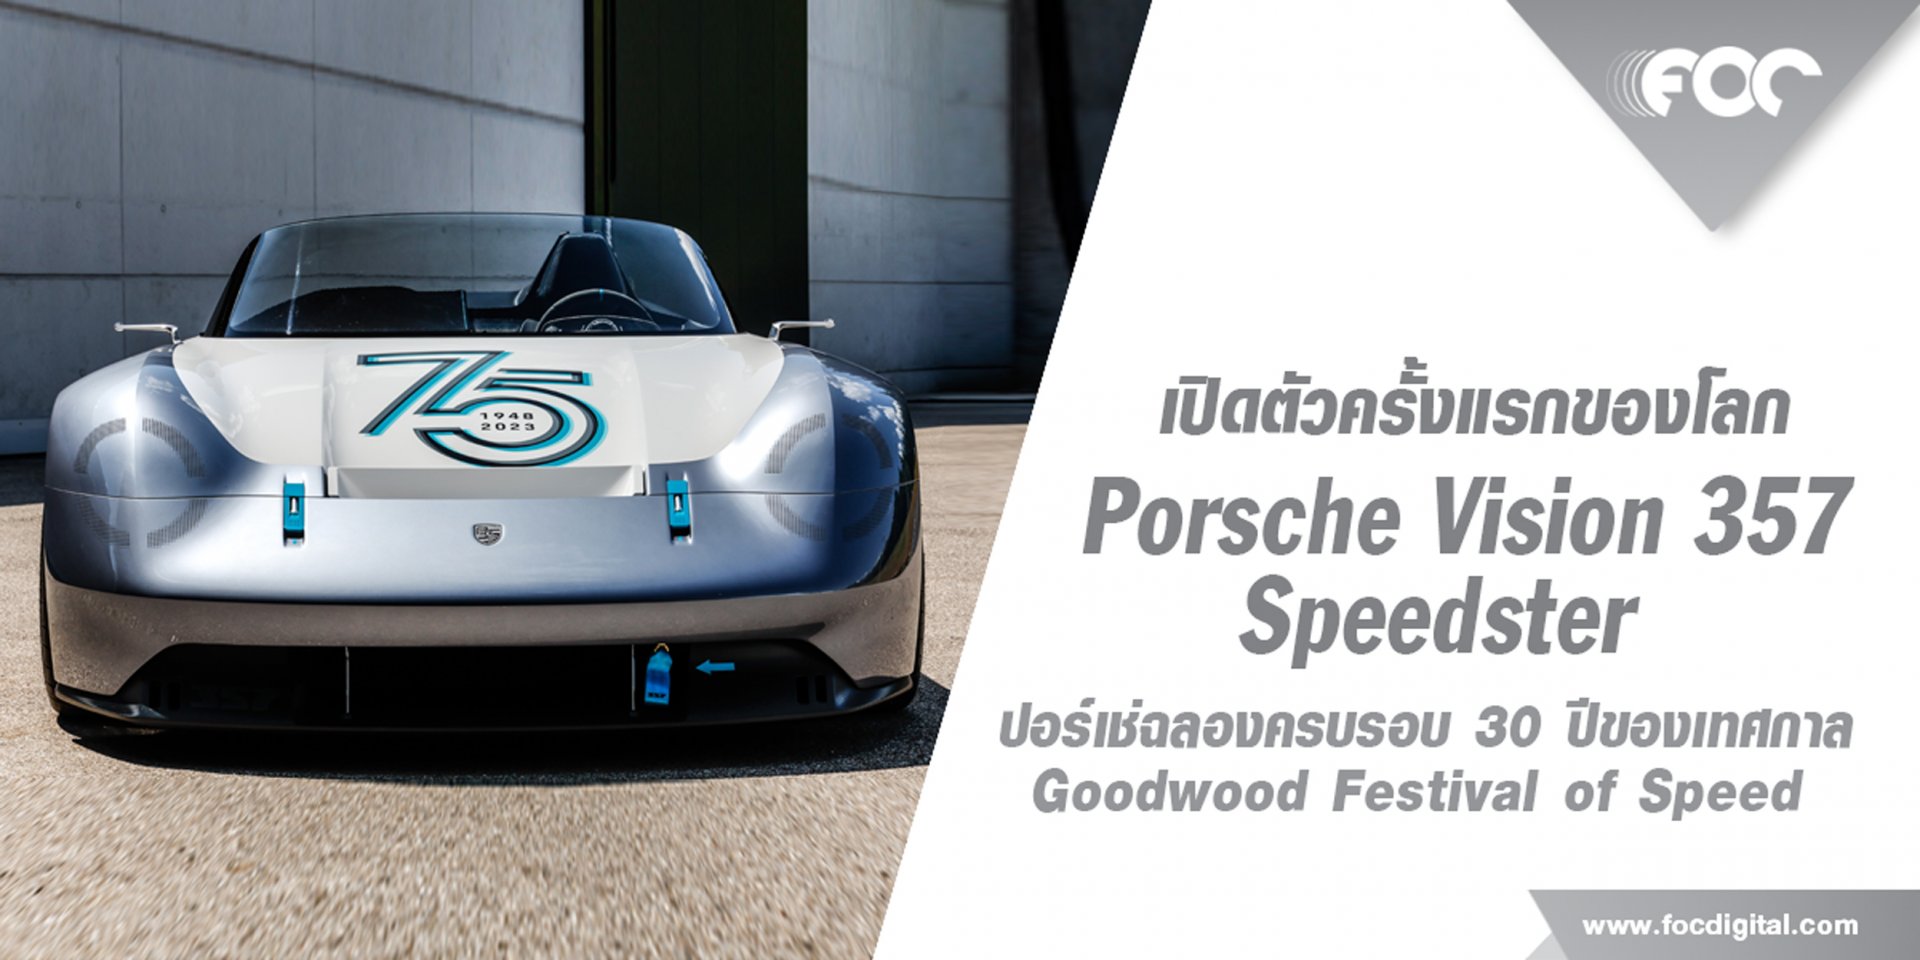 เปิดตัวรถแนวคิดใหม่ Porsche Vision 357 Speedster ในงาน Goodwood Festival of Speed 